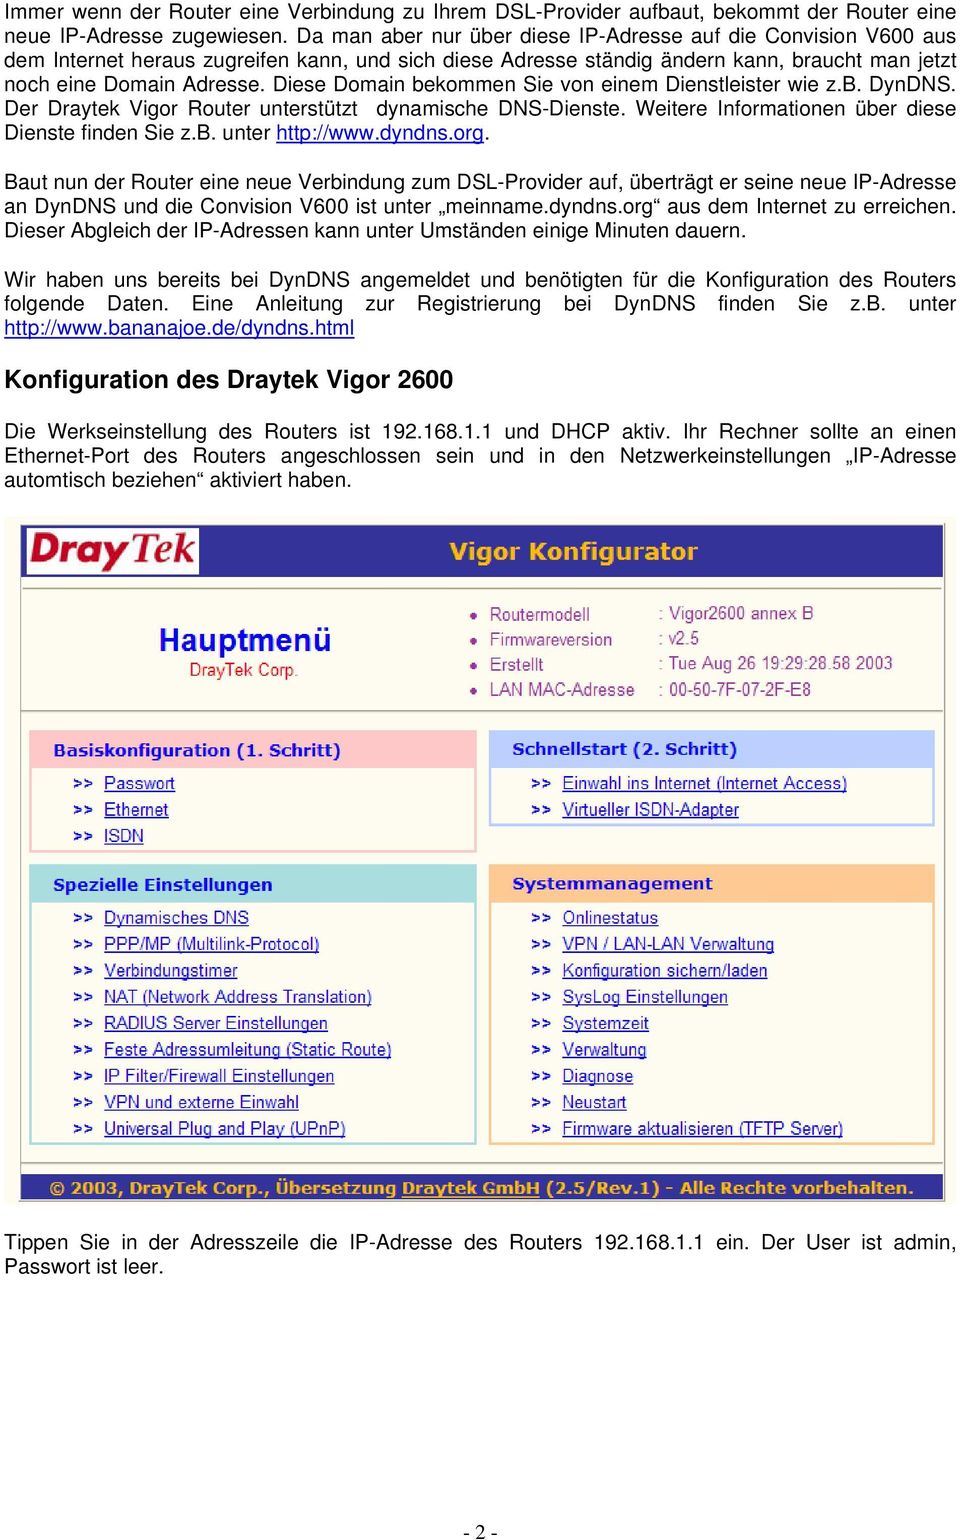 Diese Domain bekommen Sie von einem Dienstleister wie z.b. DynDNS. Der Draytek Vigor Router unterstützt dynamische DNS-Dienste. Weitere Informationen über diese Dienste finden Sie z.b. unter http://www.